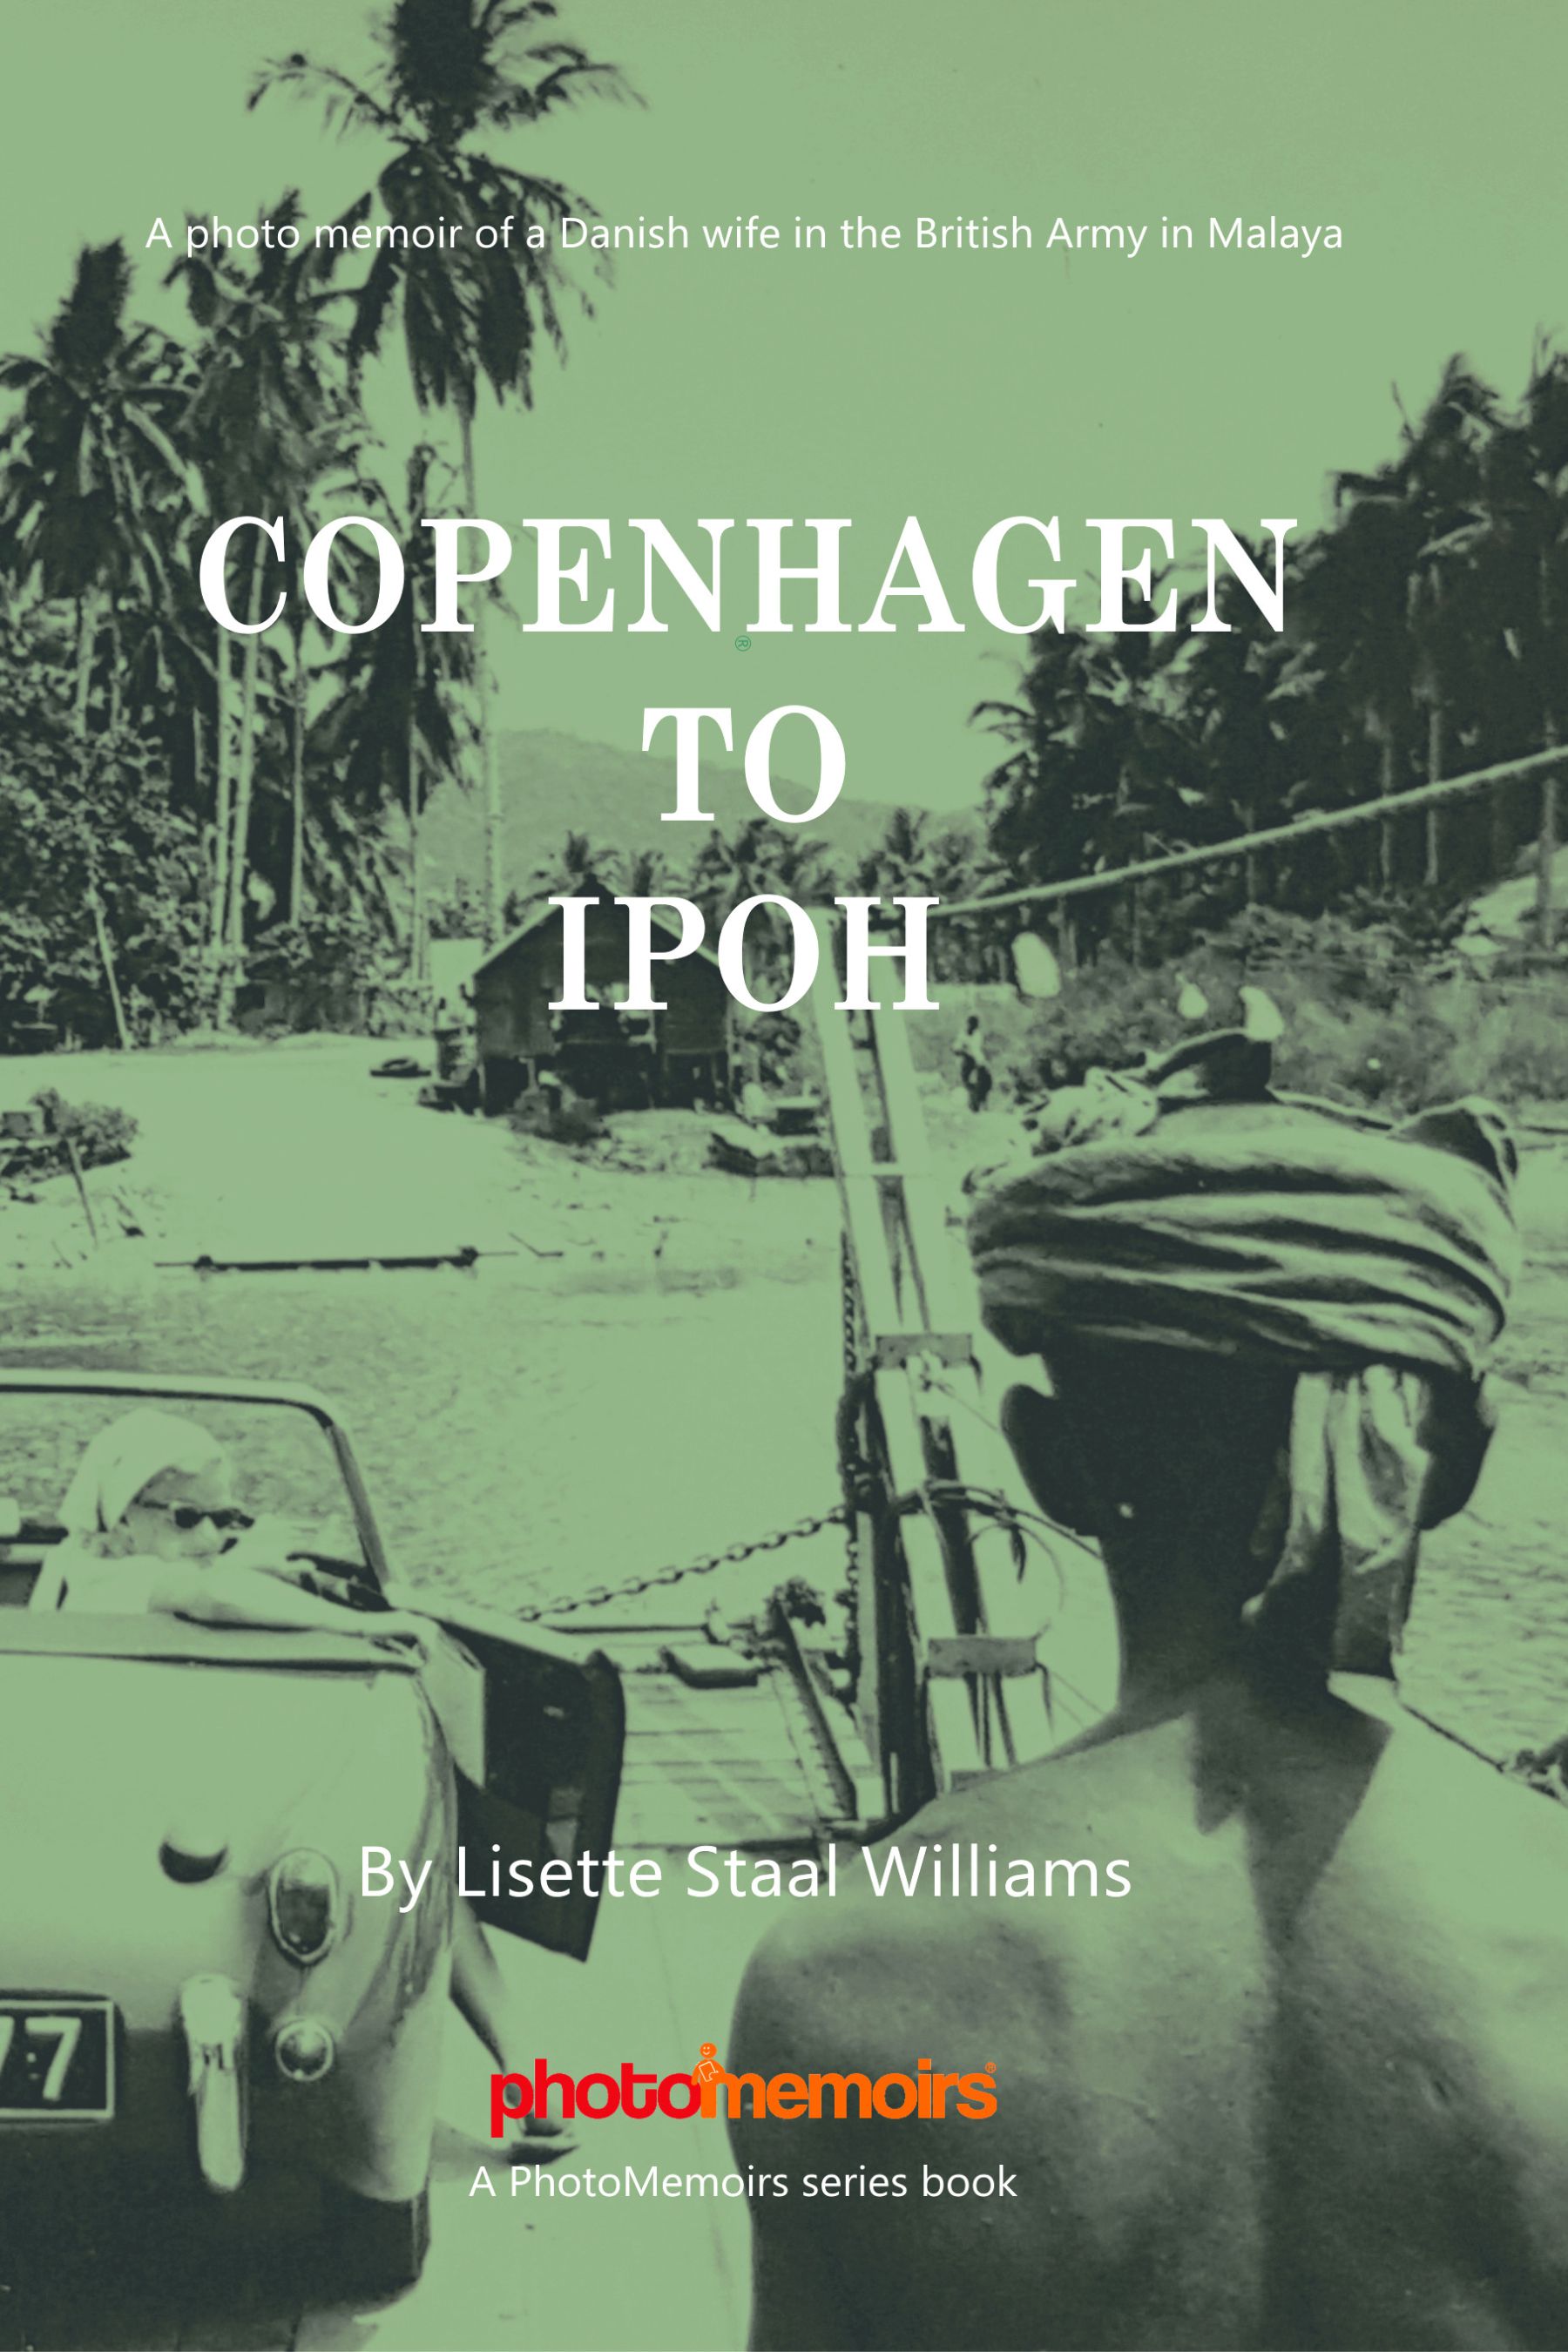 Copenhagen to Ipoh